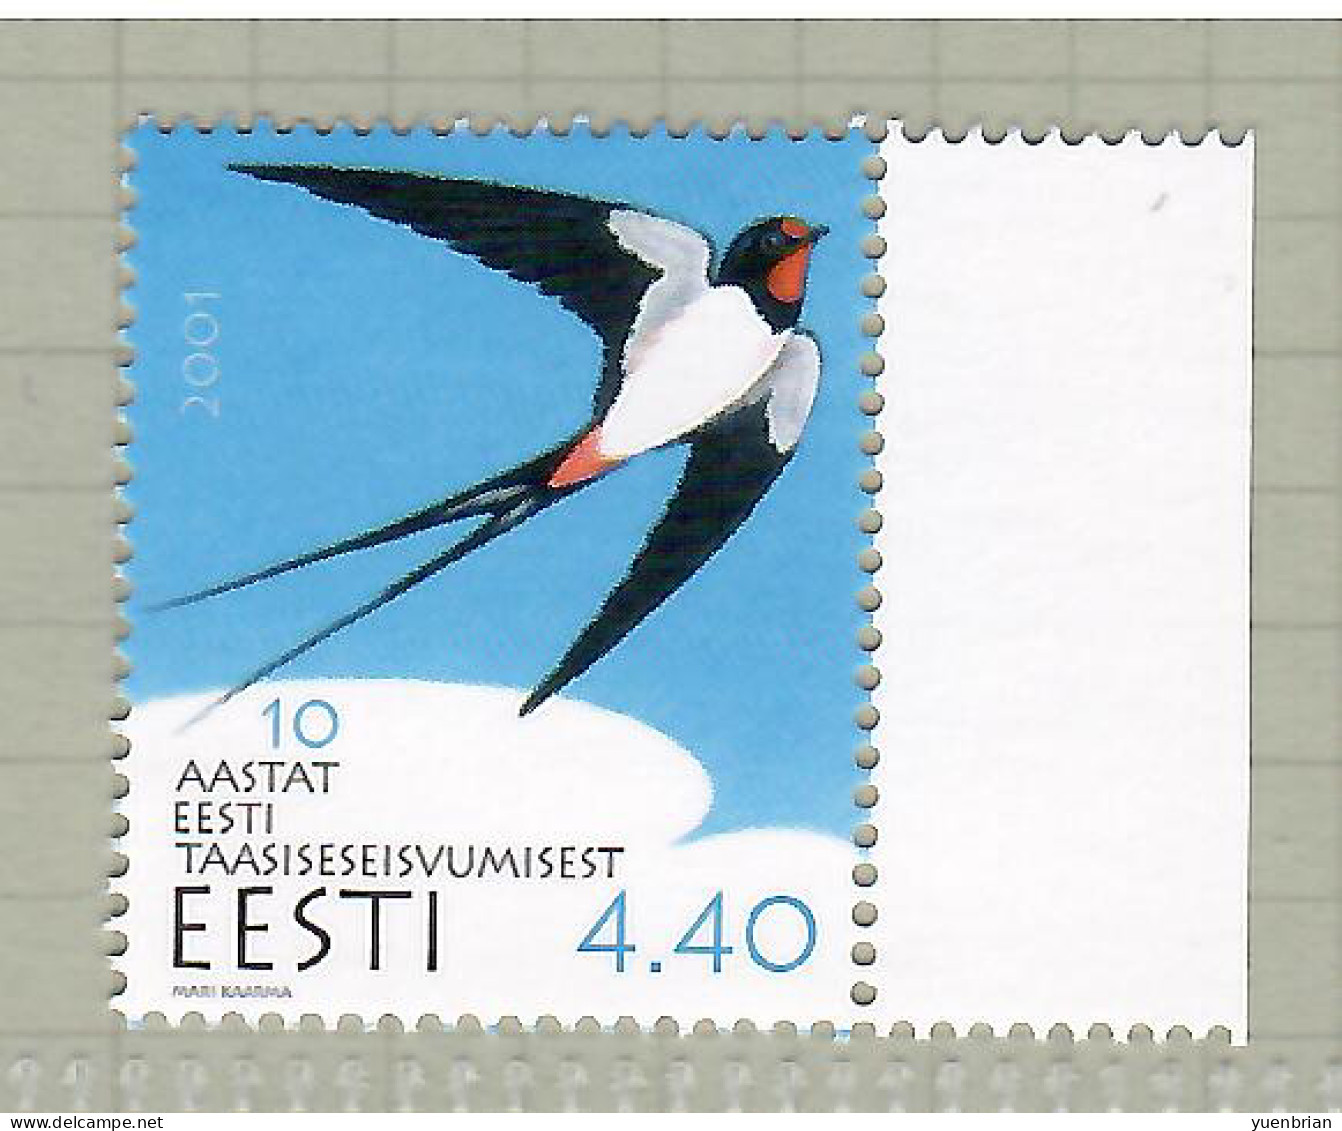 Estonia 2001, Bird, Birds, 1v, MNH** - Zwaluwen